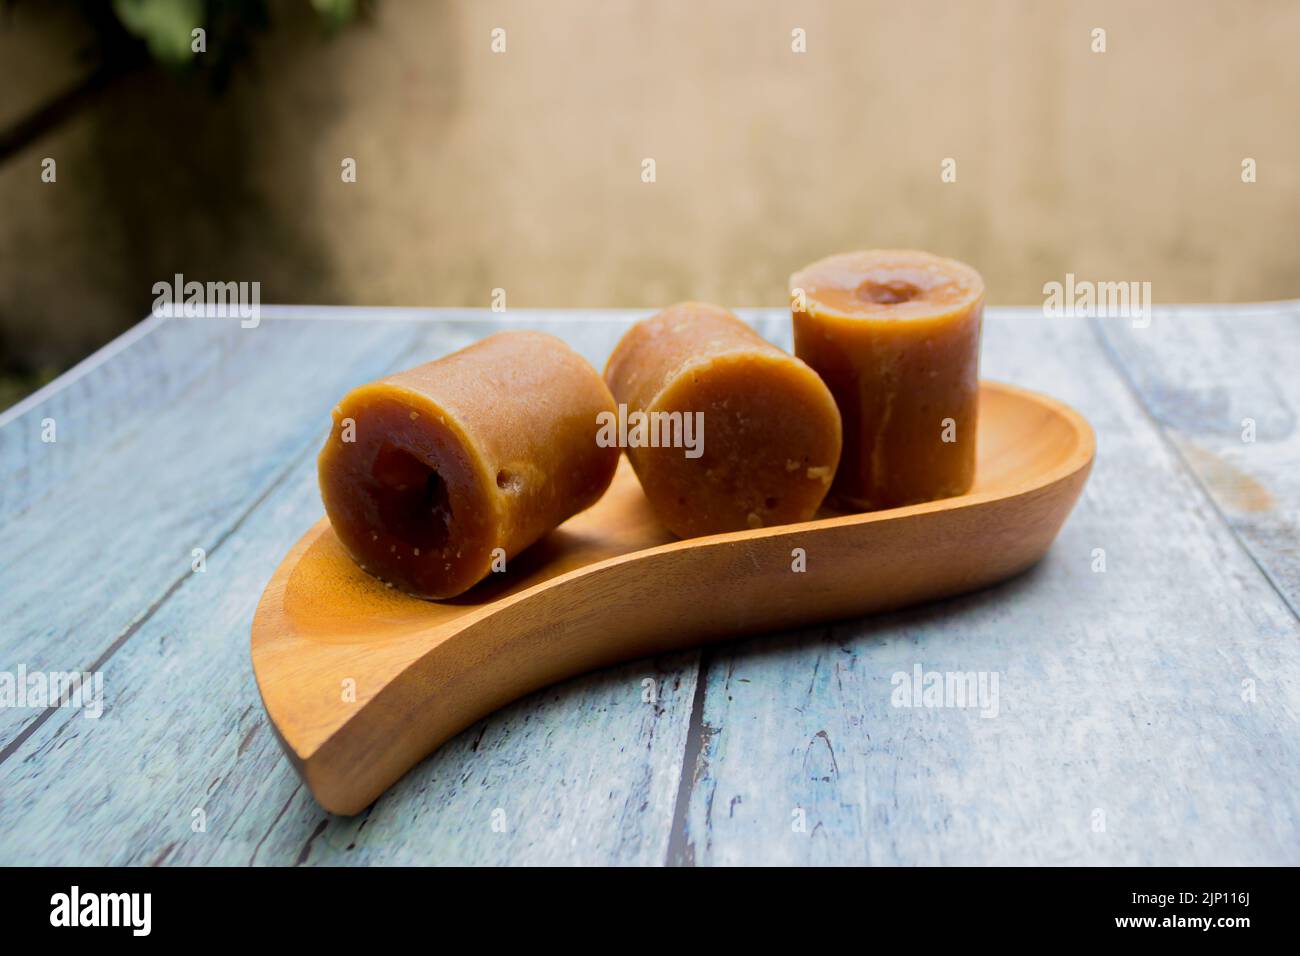 Zucchero di canna indonesiano, zucchero di palma o merah di gula in cubetti con vassoio di legno Foto Stock